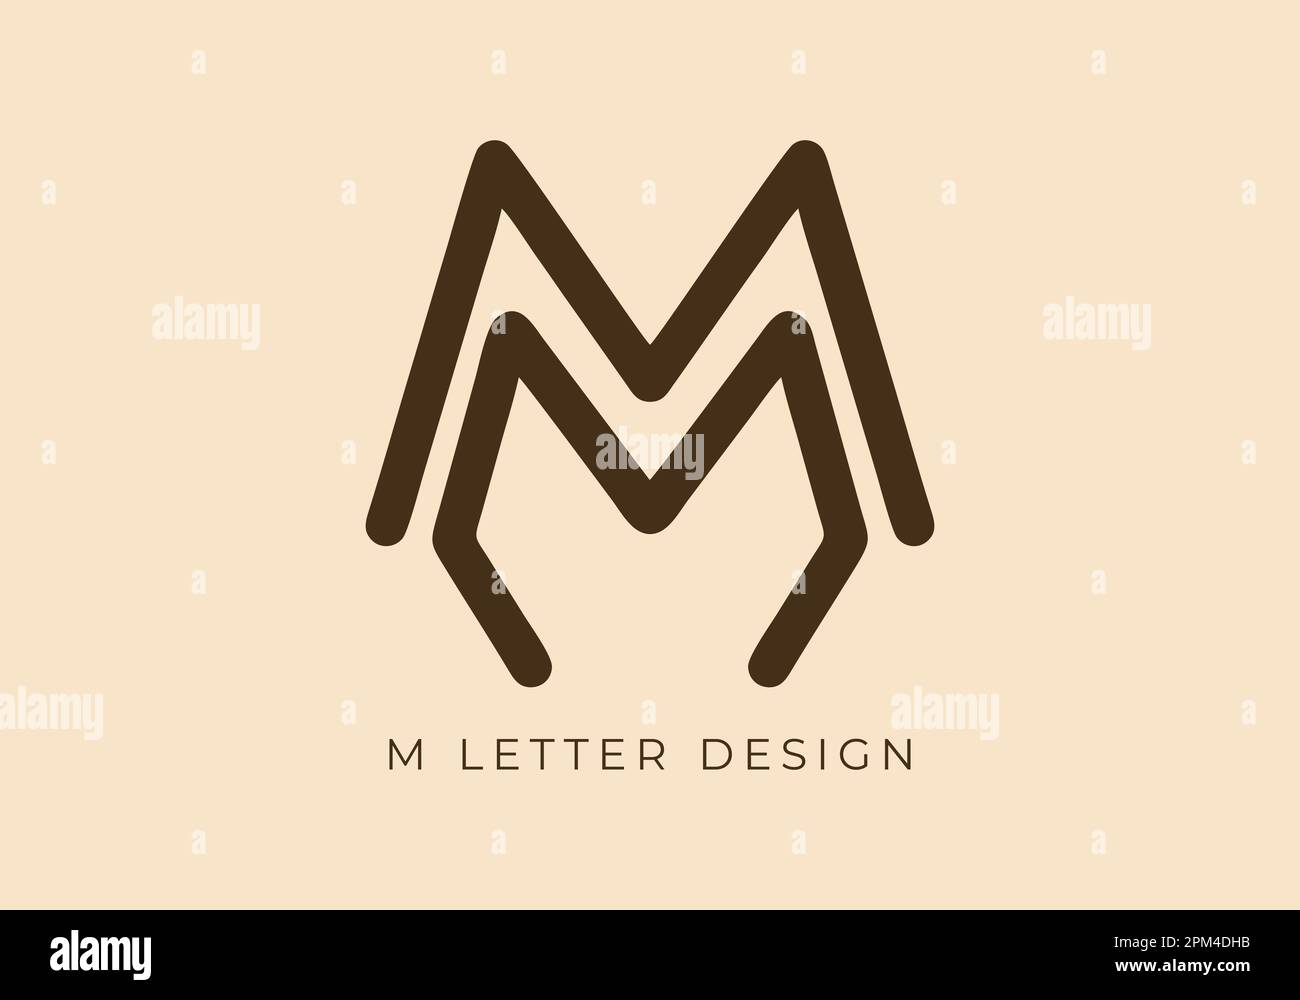 Esclusiva linea monocromatica con design monocromatico della lettera iniziale M. Illustrazione Vettoriale